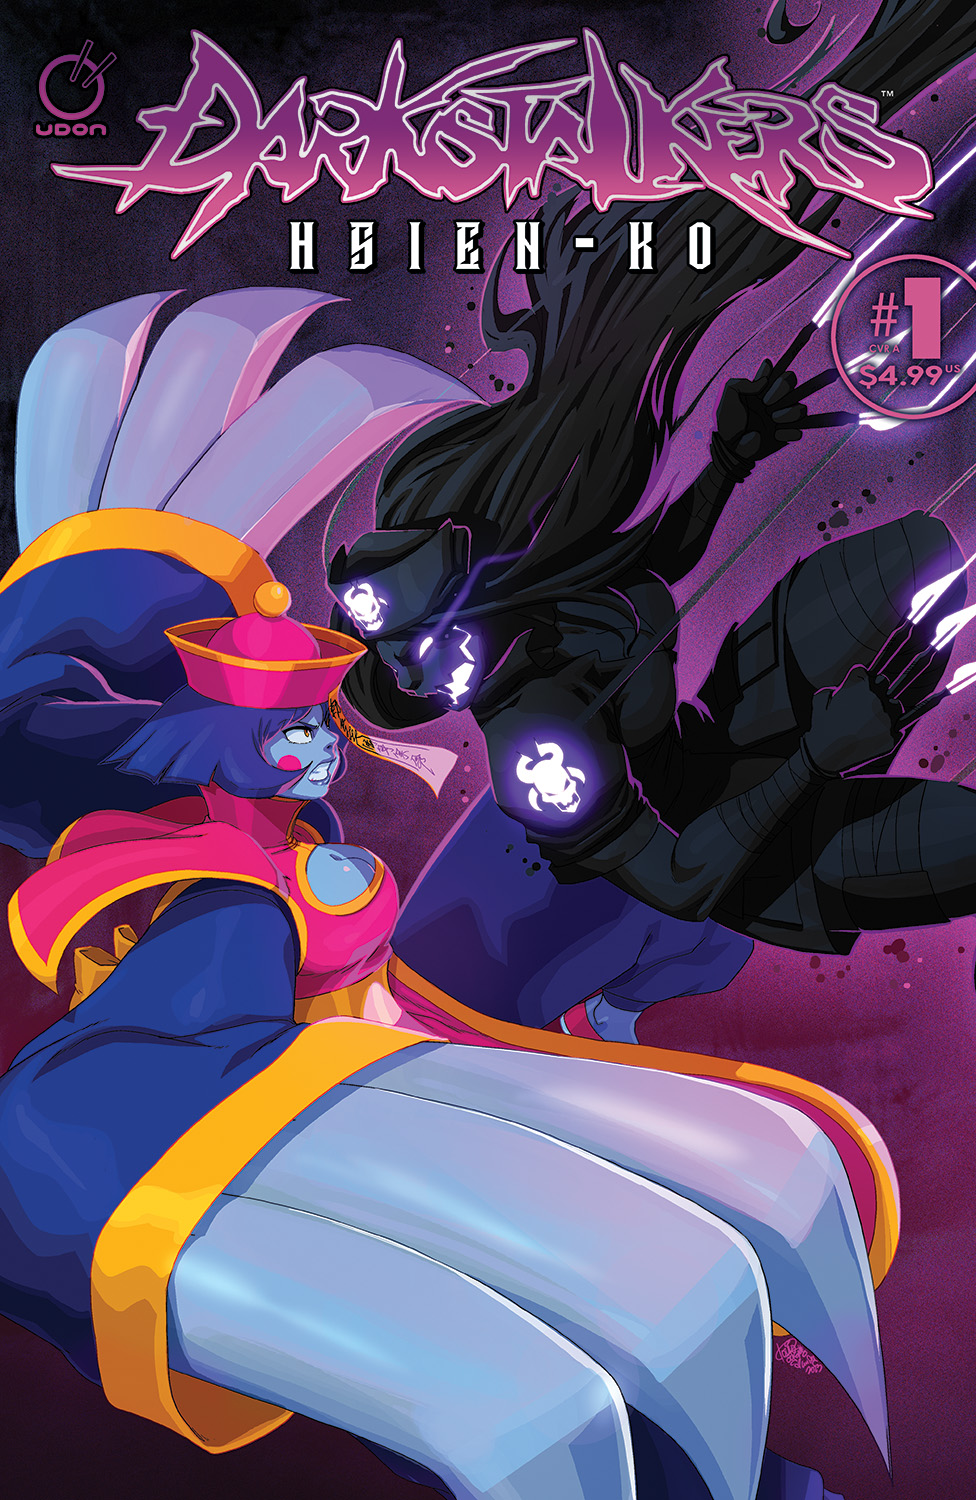 Darkstalkers: Hsien-Ko Comic Debuts in October